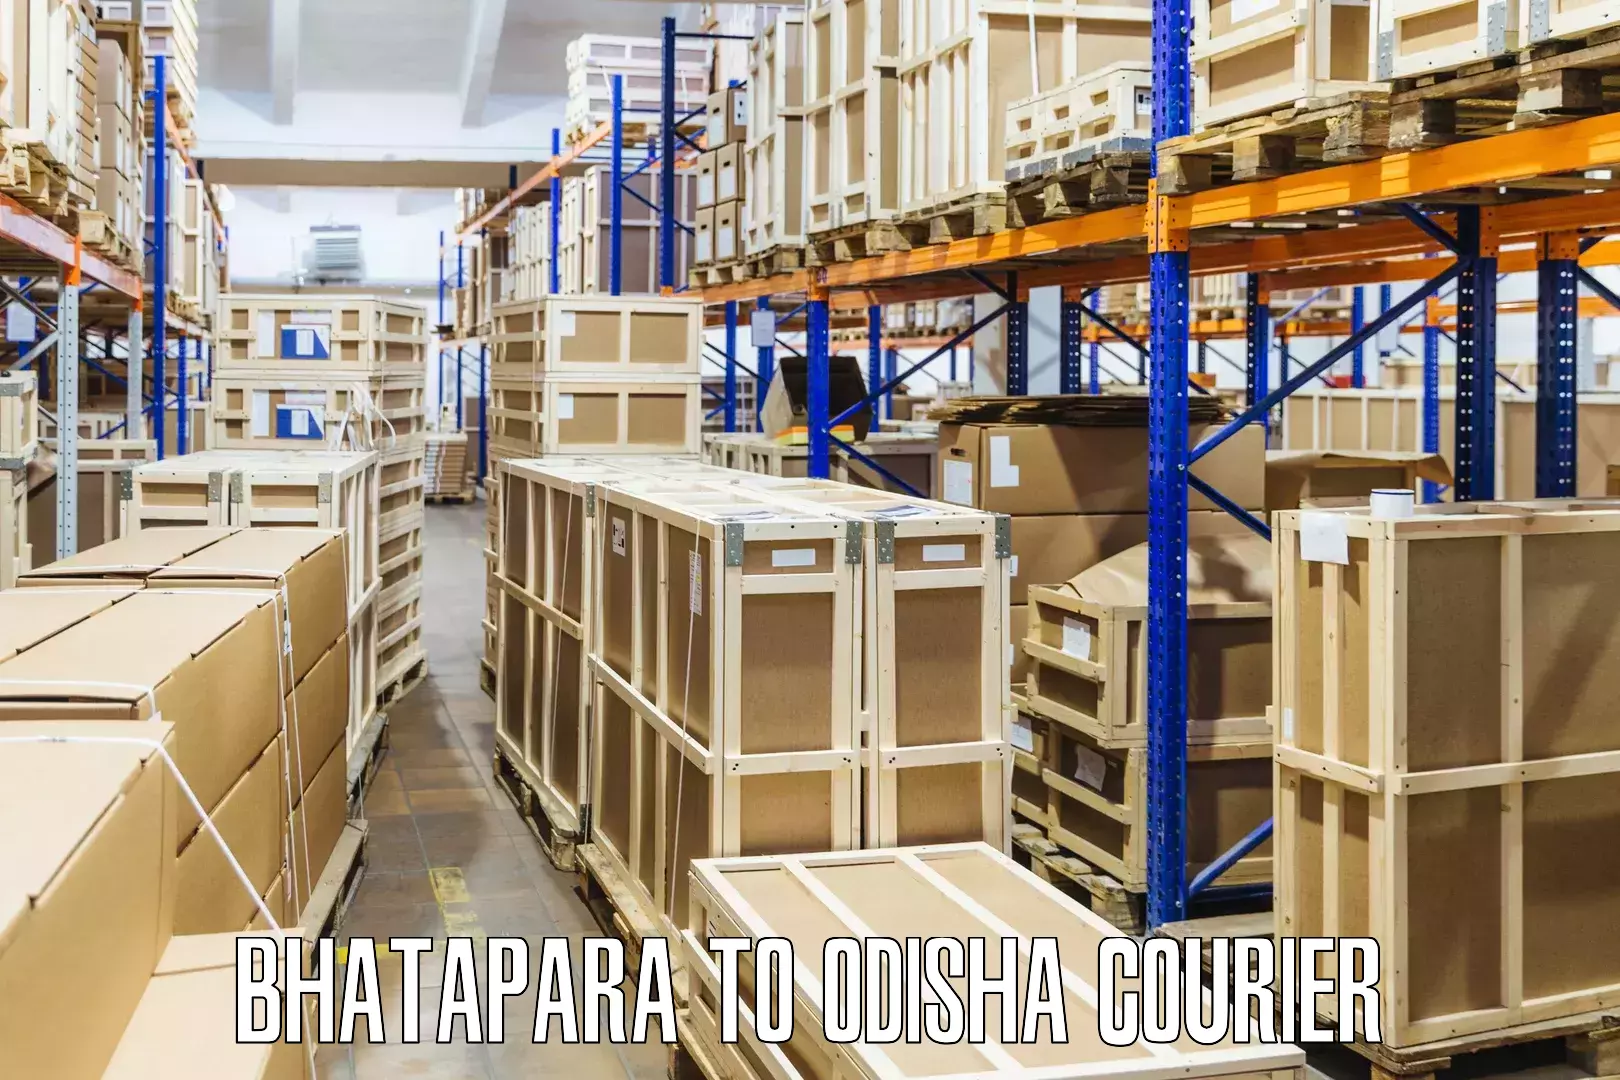 Supply chain efficiency in Bhatapara to Rairangpur